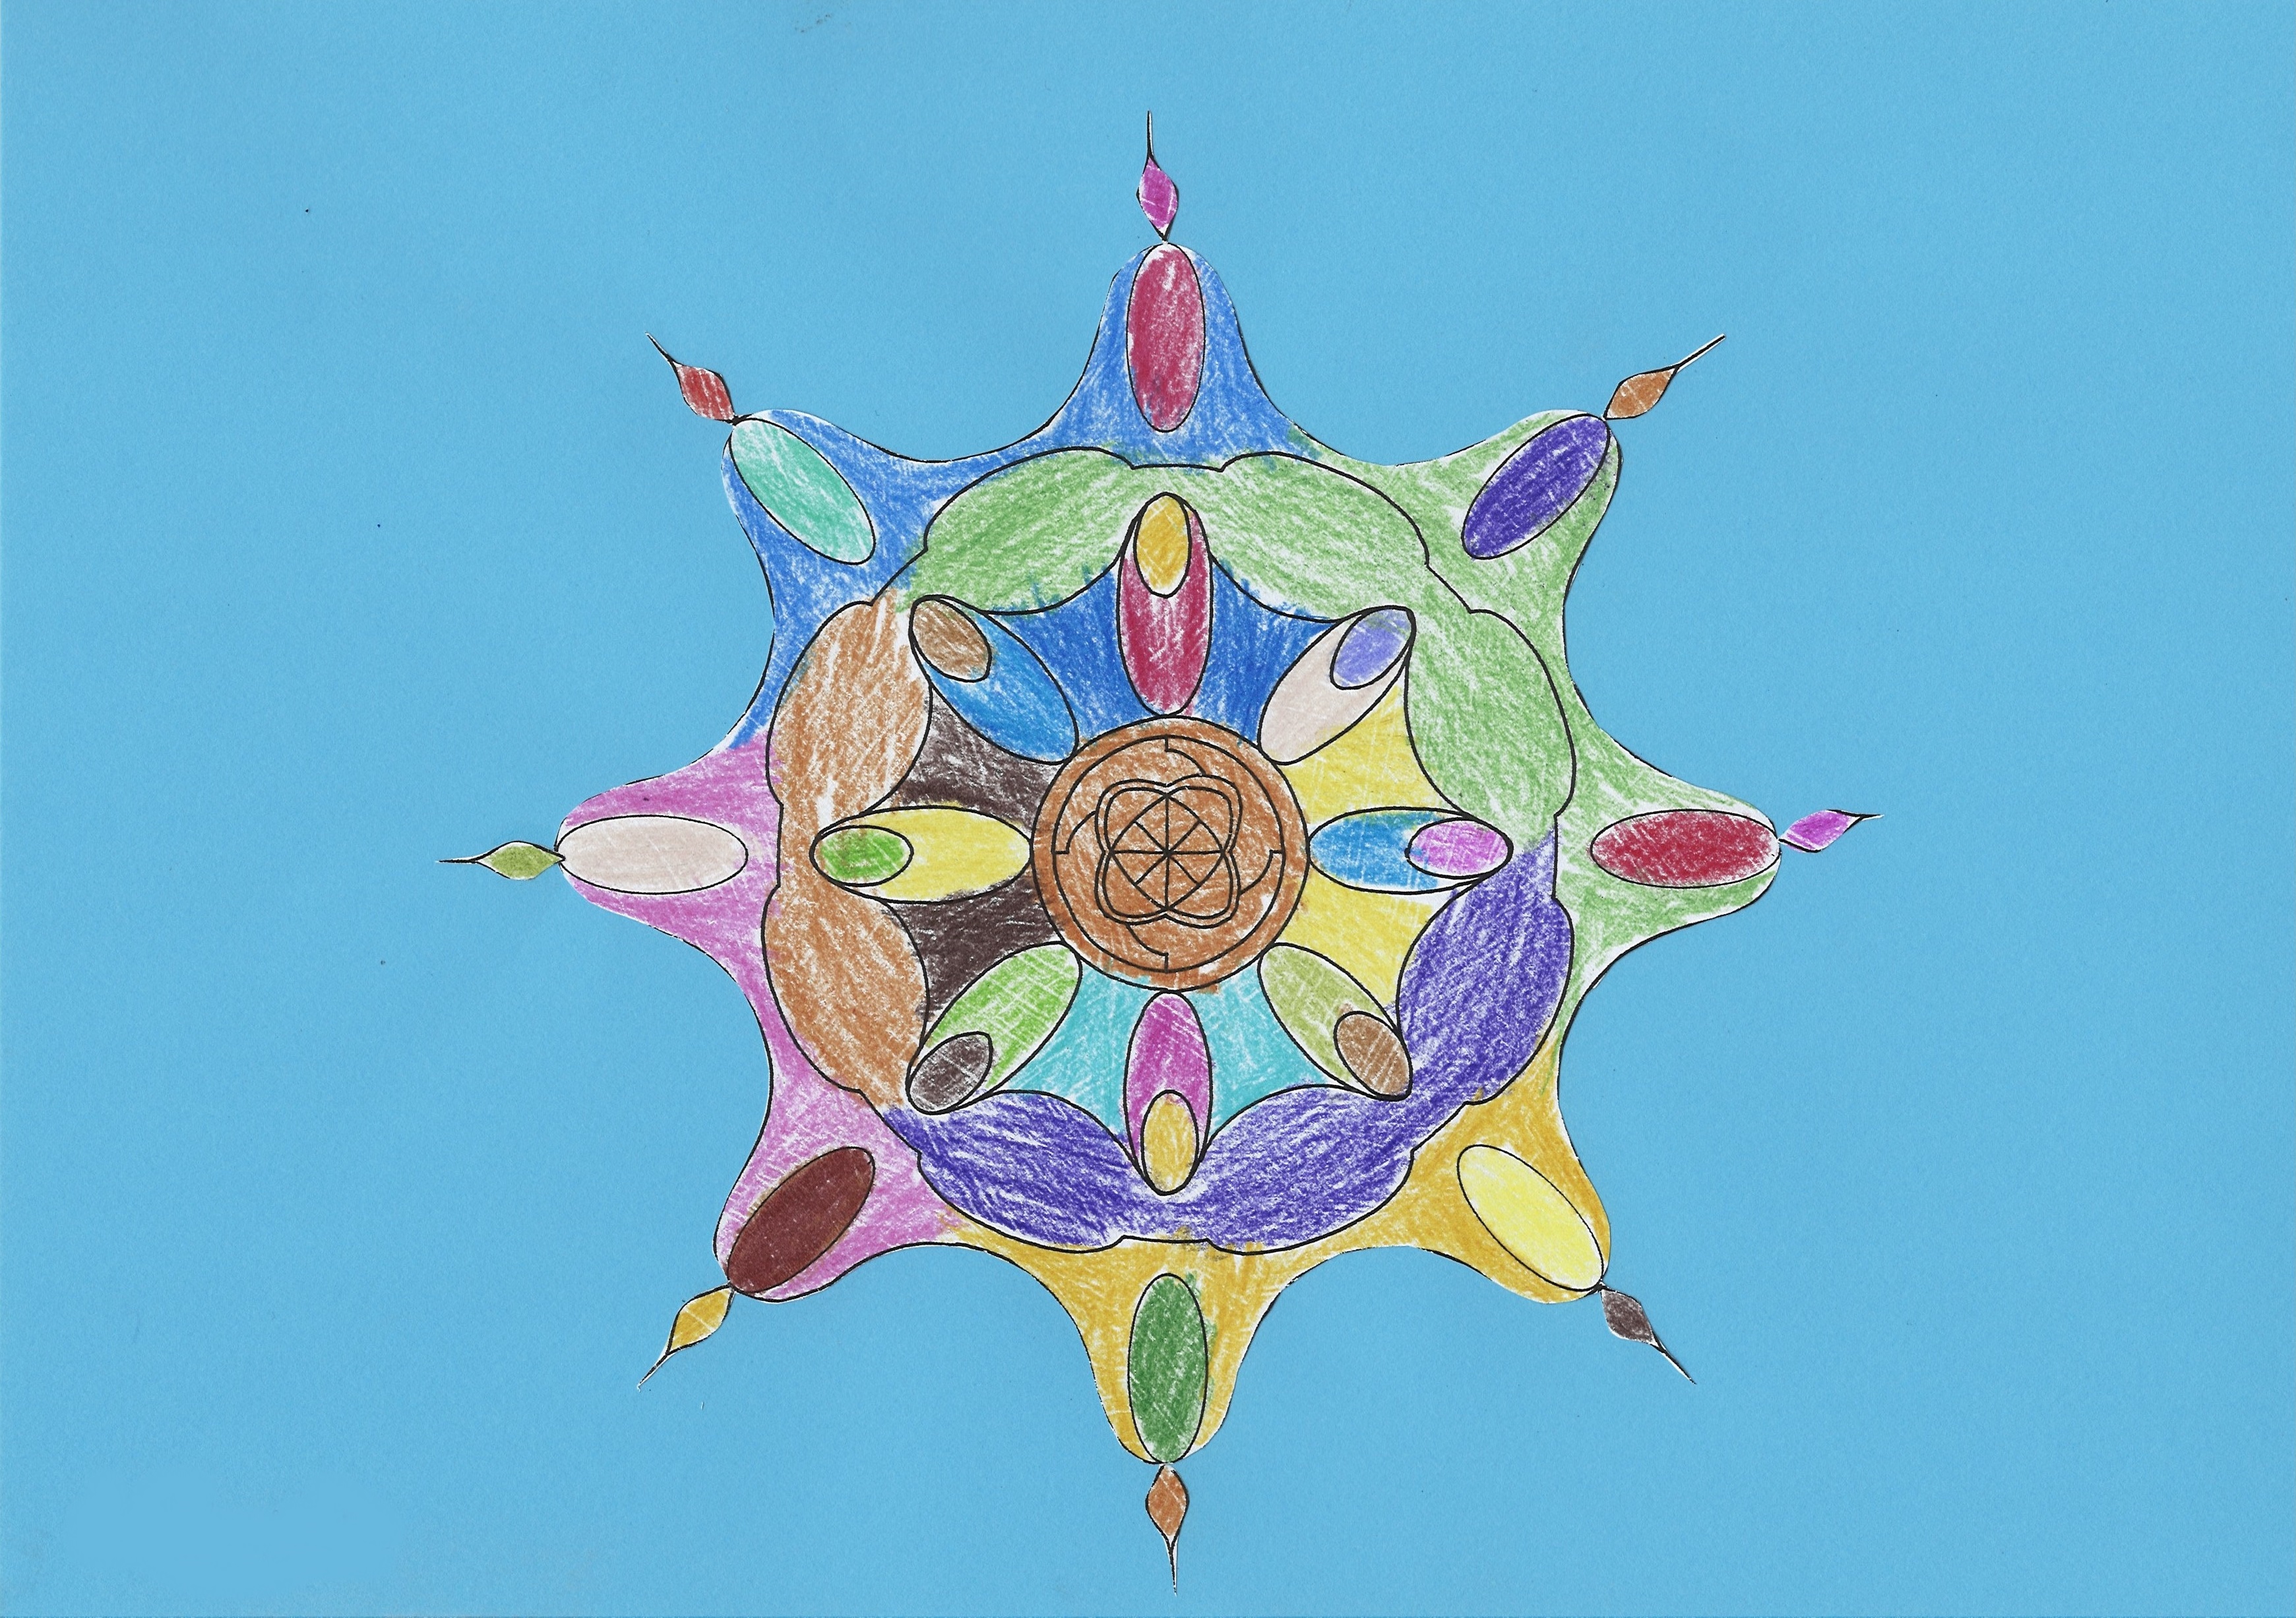 Obrazek wykonany techniką mieszaną przedstawiający różnobarwną mandalę z ośmioma ostro zakończonymi odnogami na niebieskim tle. 